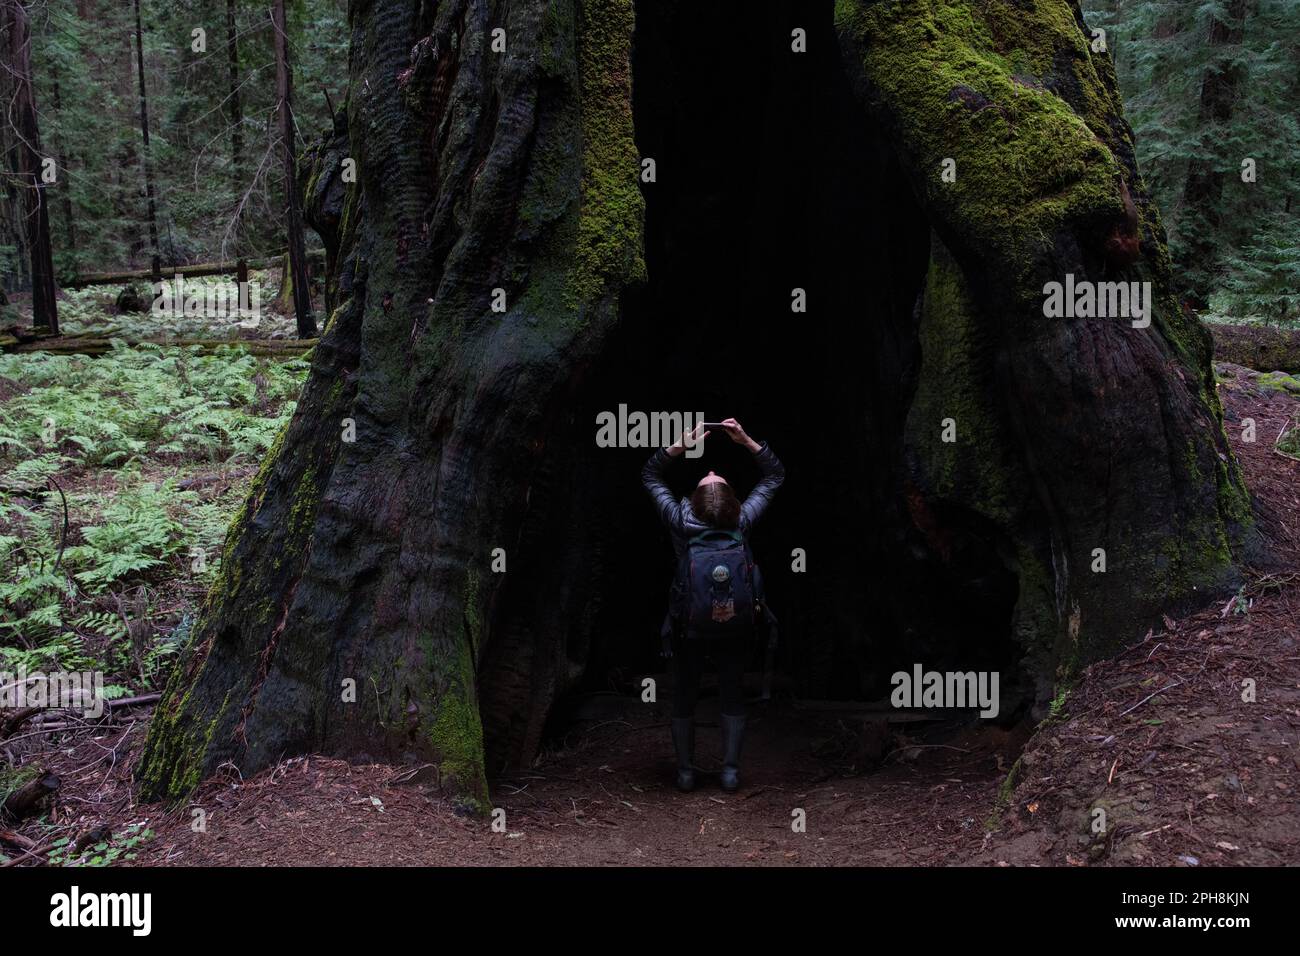 Una ragazza escursionista in piedi all'interno della base di una costa redwood, Sequoia sempervirens, tronco d'albero e guardando in alto, è molto piccola in confronto. Foto Stock